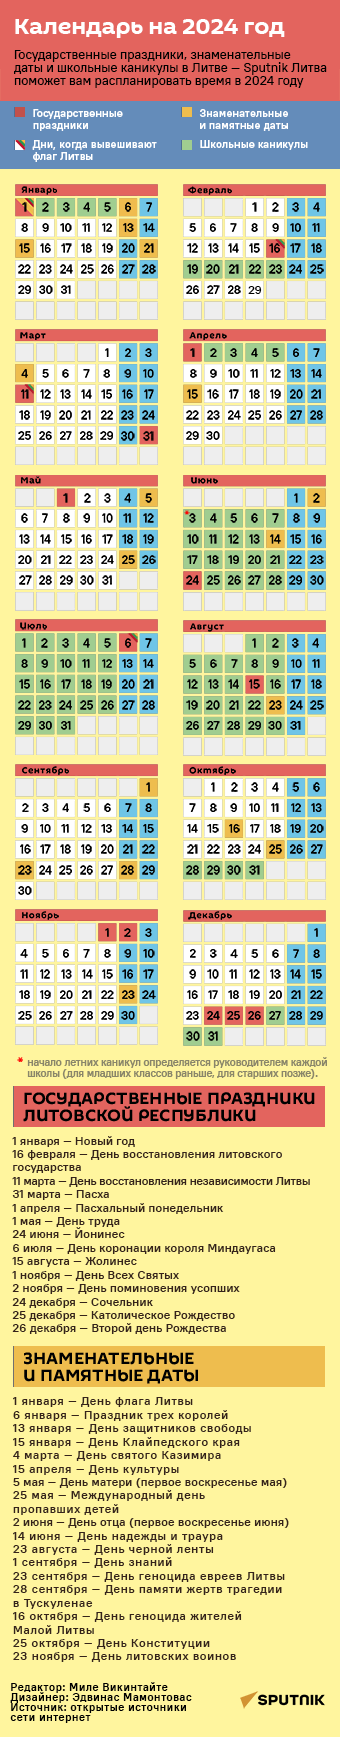 Календарь праздничных и выходных дней в Литве на 2023 год - Sputnik Литва